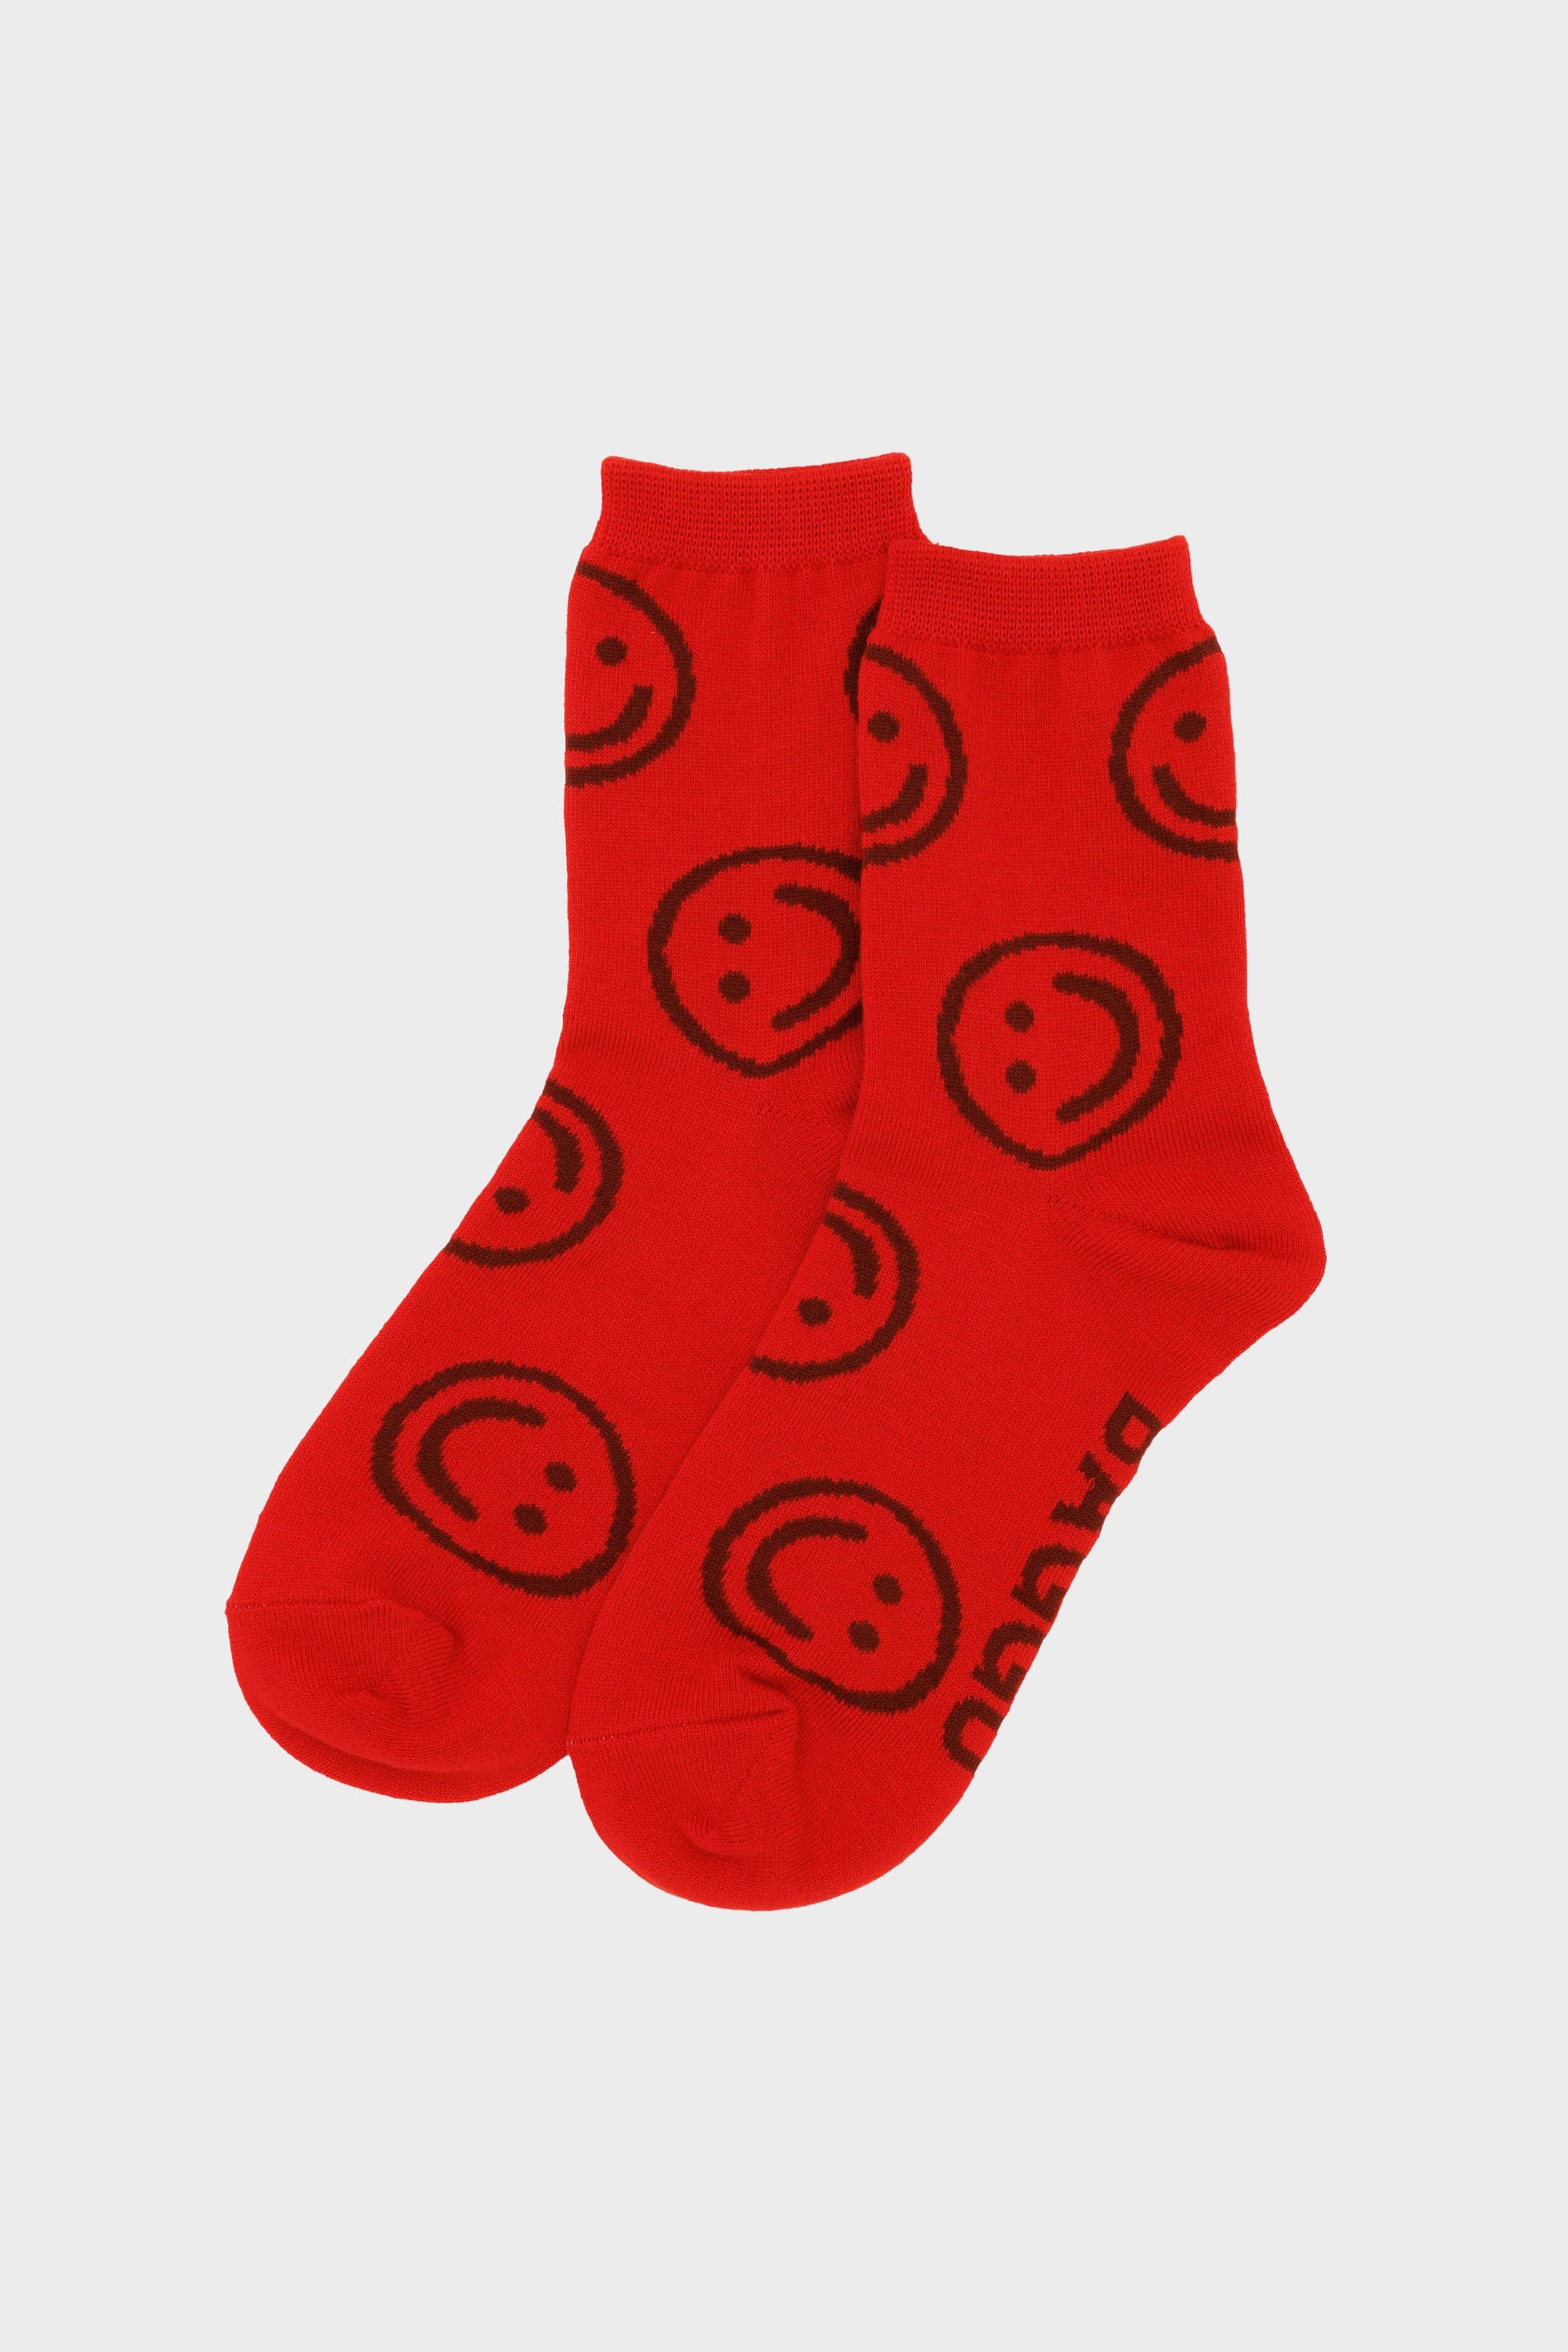 Crew Socks in Red Happy